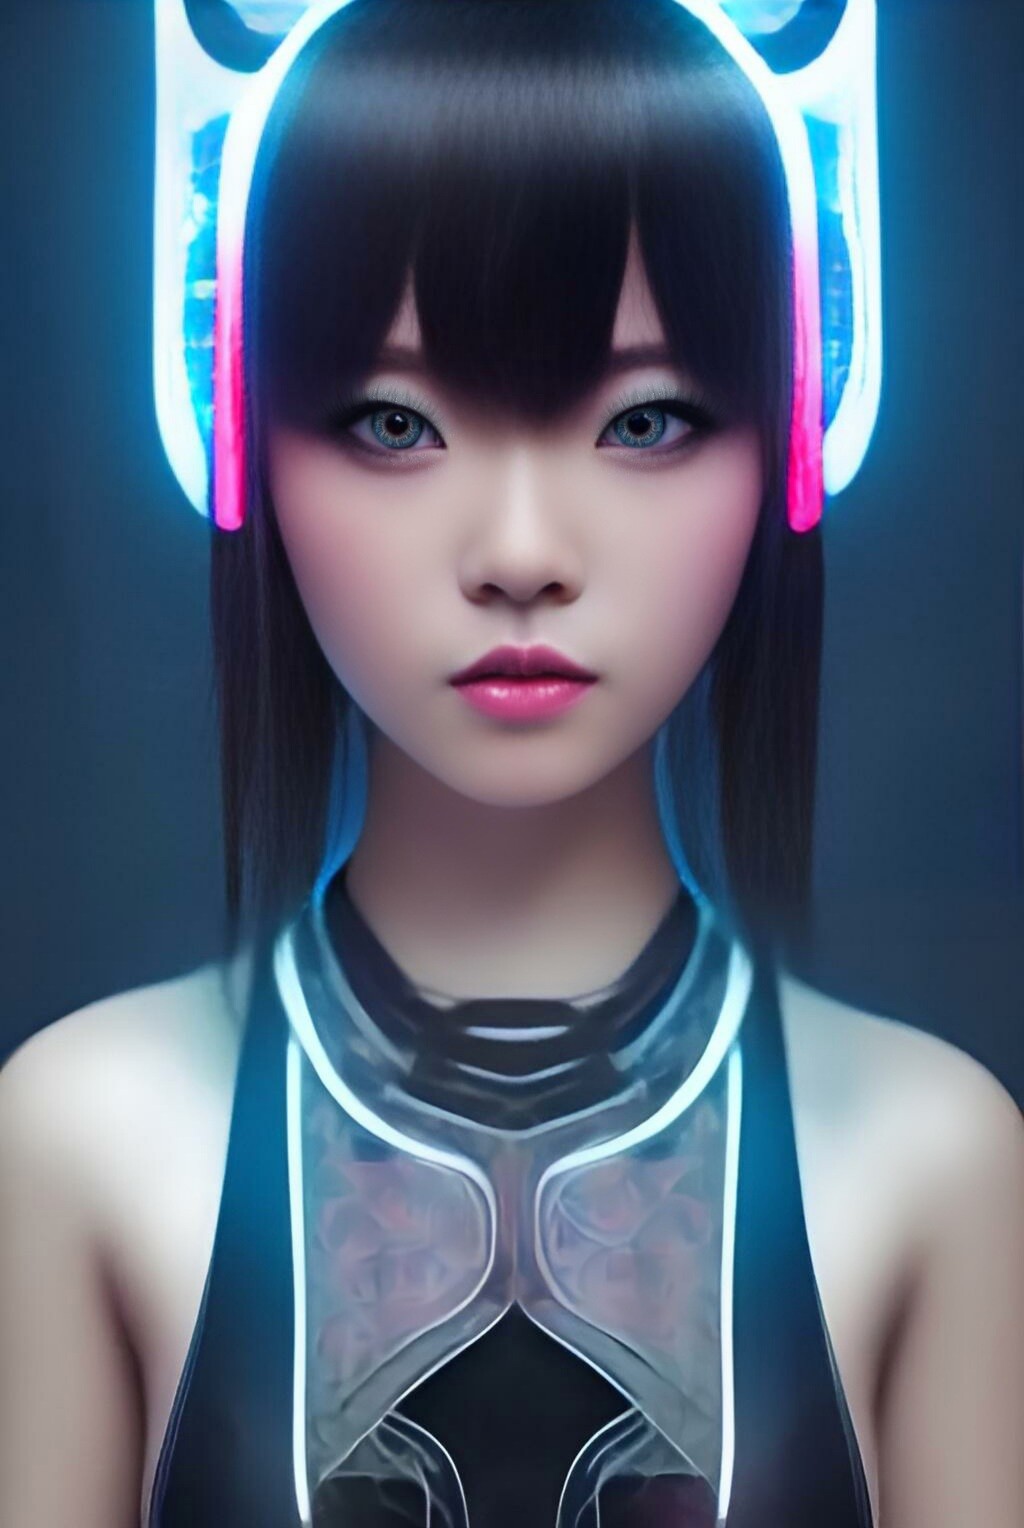 ArtStation - Cyberpunk Japanese Gamer Girl